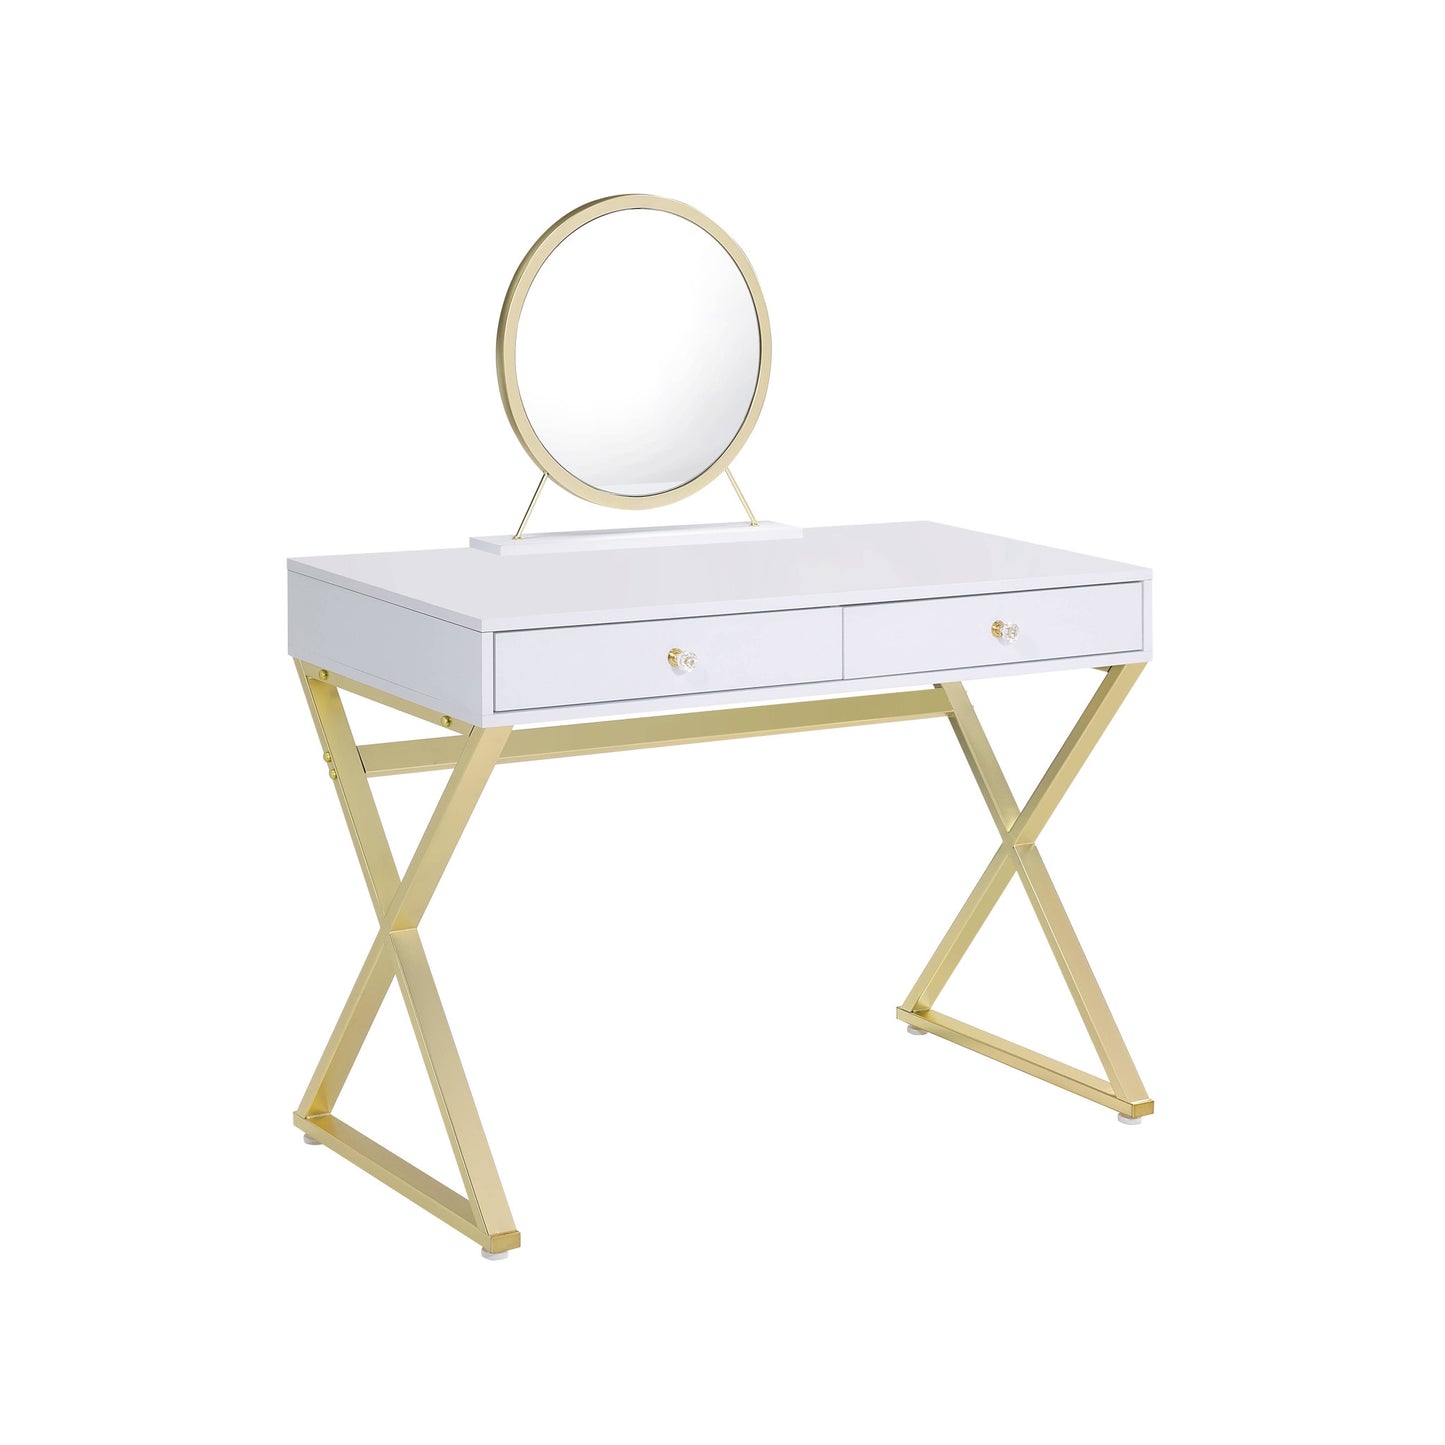 31" White & Gold Finish Round Dresser Mirror